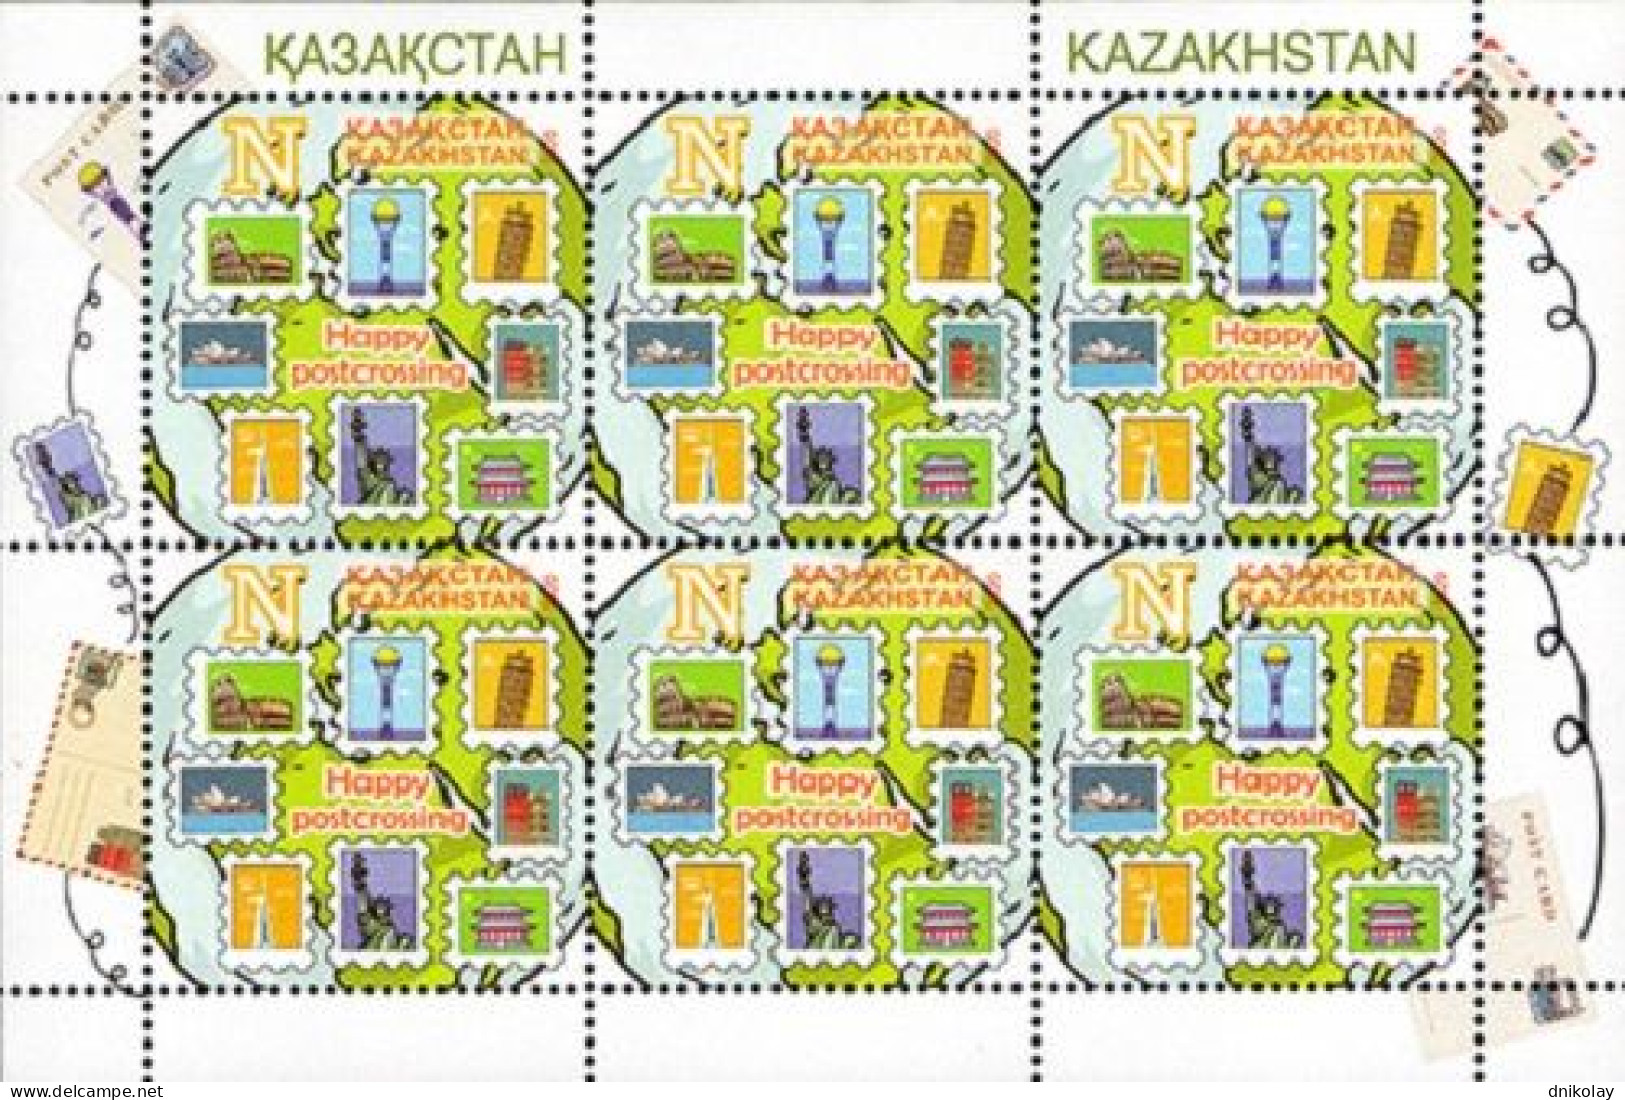 2020 1233 Kazakhstan Happy Postcrossing MNH - Kasachstan